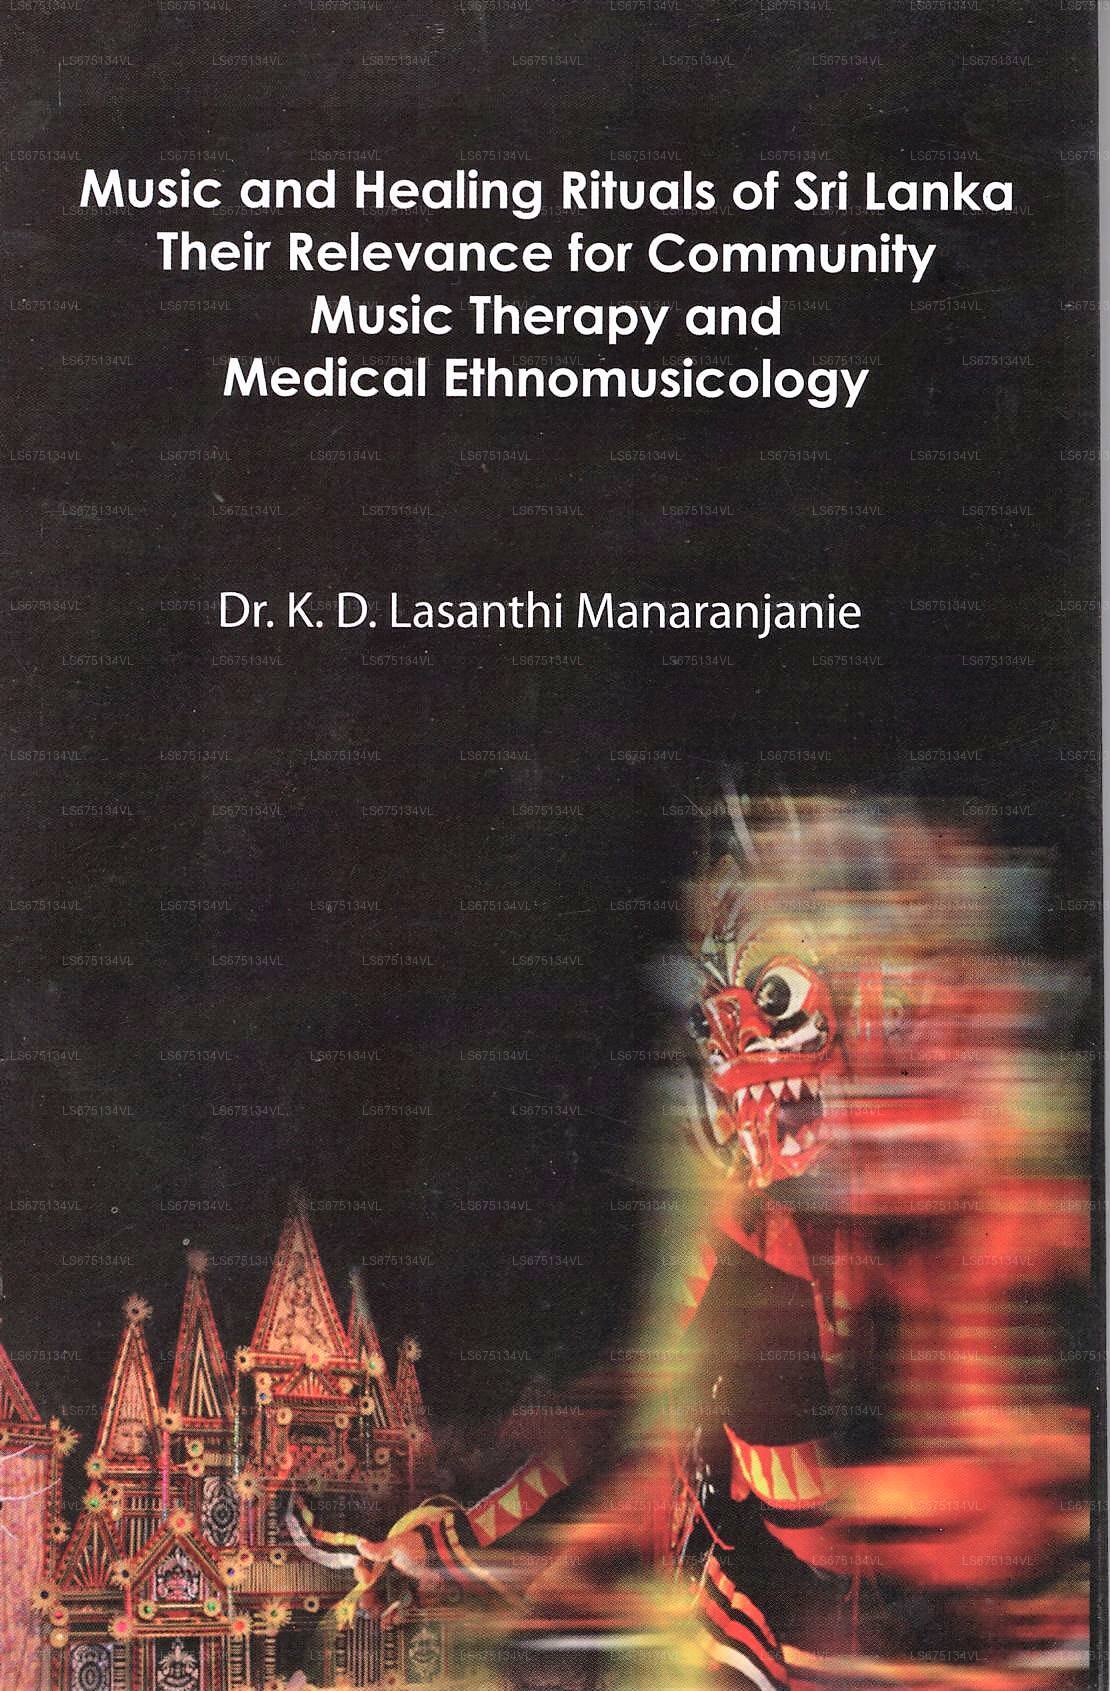 Musik und Heilrituale Sri Lankas (ihre Relevanz für gemeinschaftliche Musiktherapie und medizinische Ethnologie) 